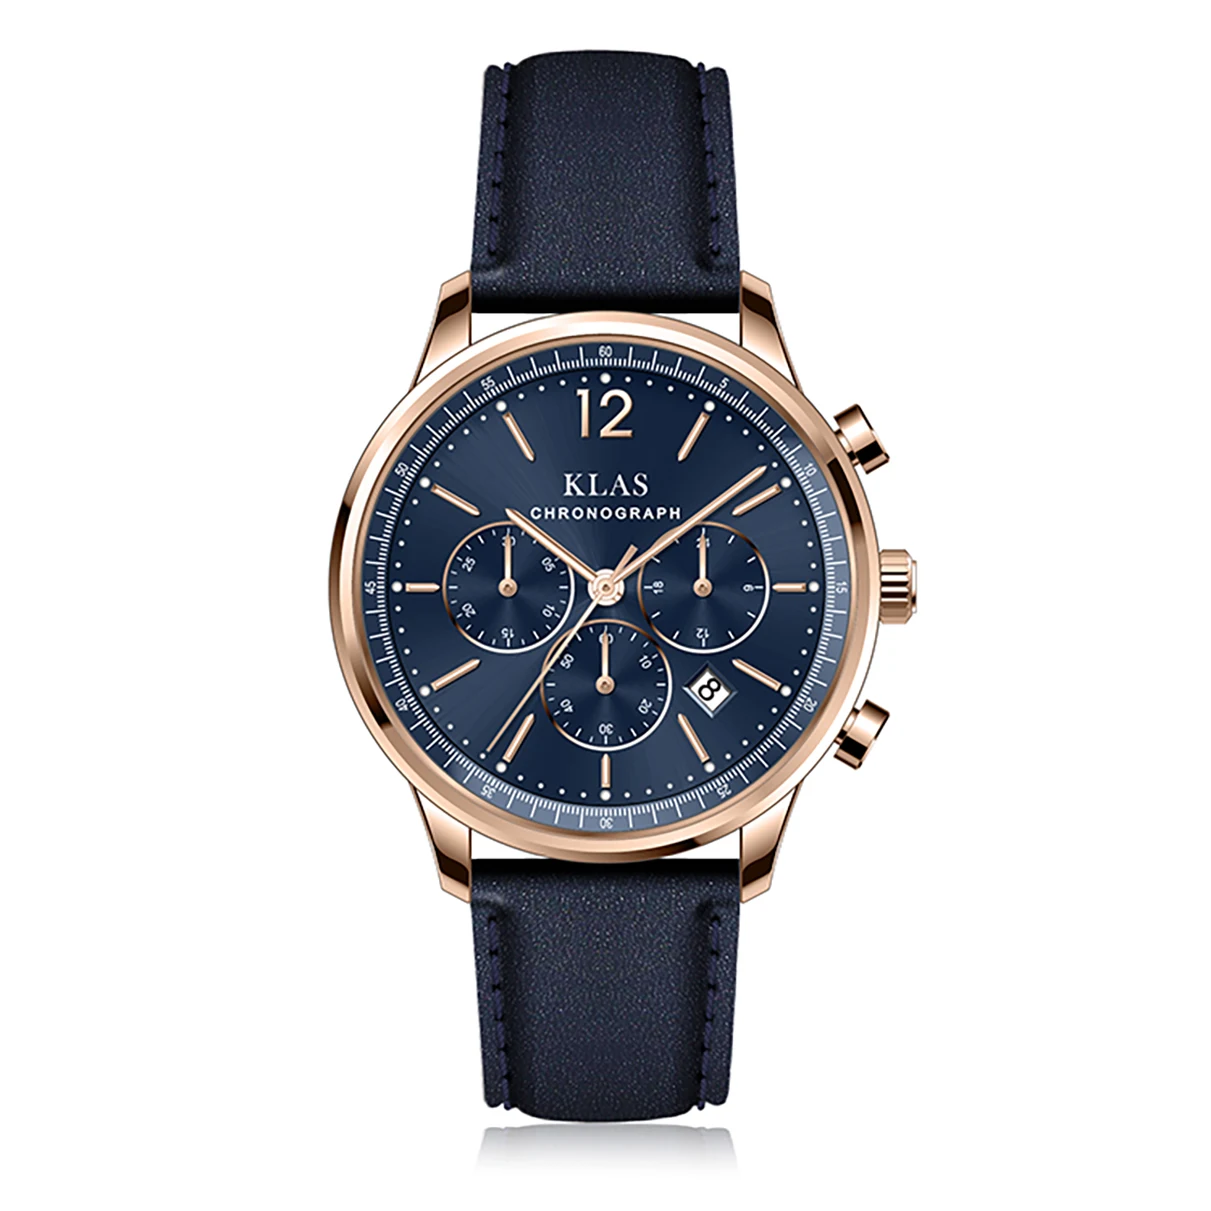 NEW Men's Watch Casual waterproof Trend Leather Clock Birthday gift  KLAS horloges mannen